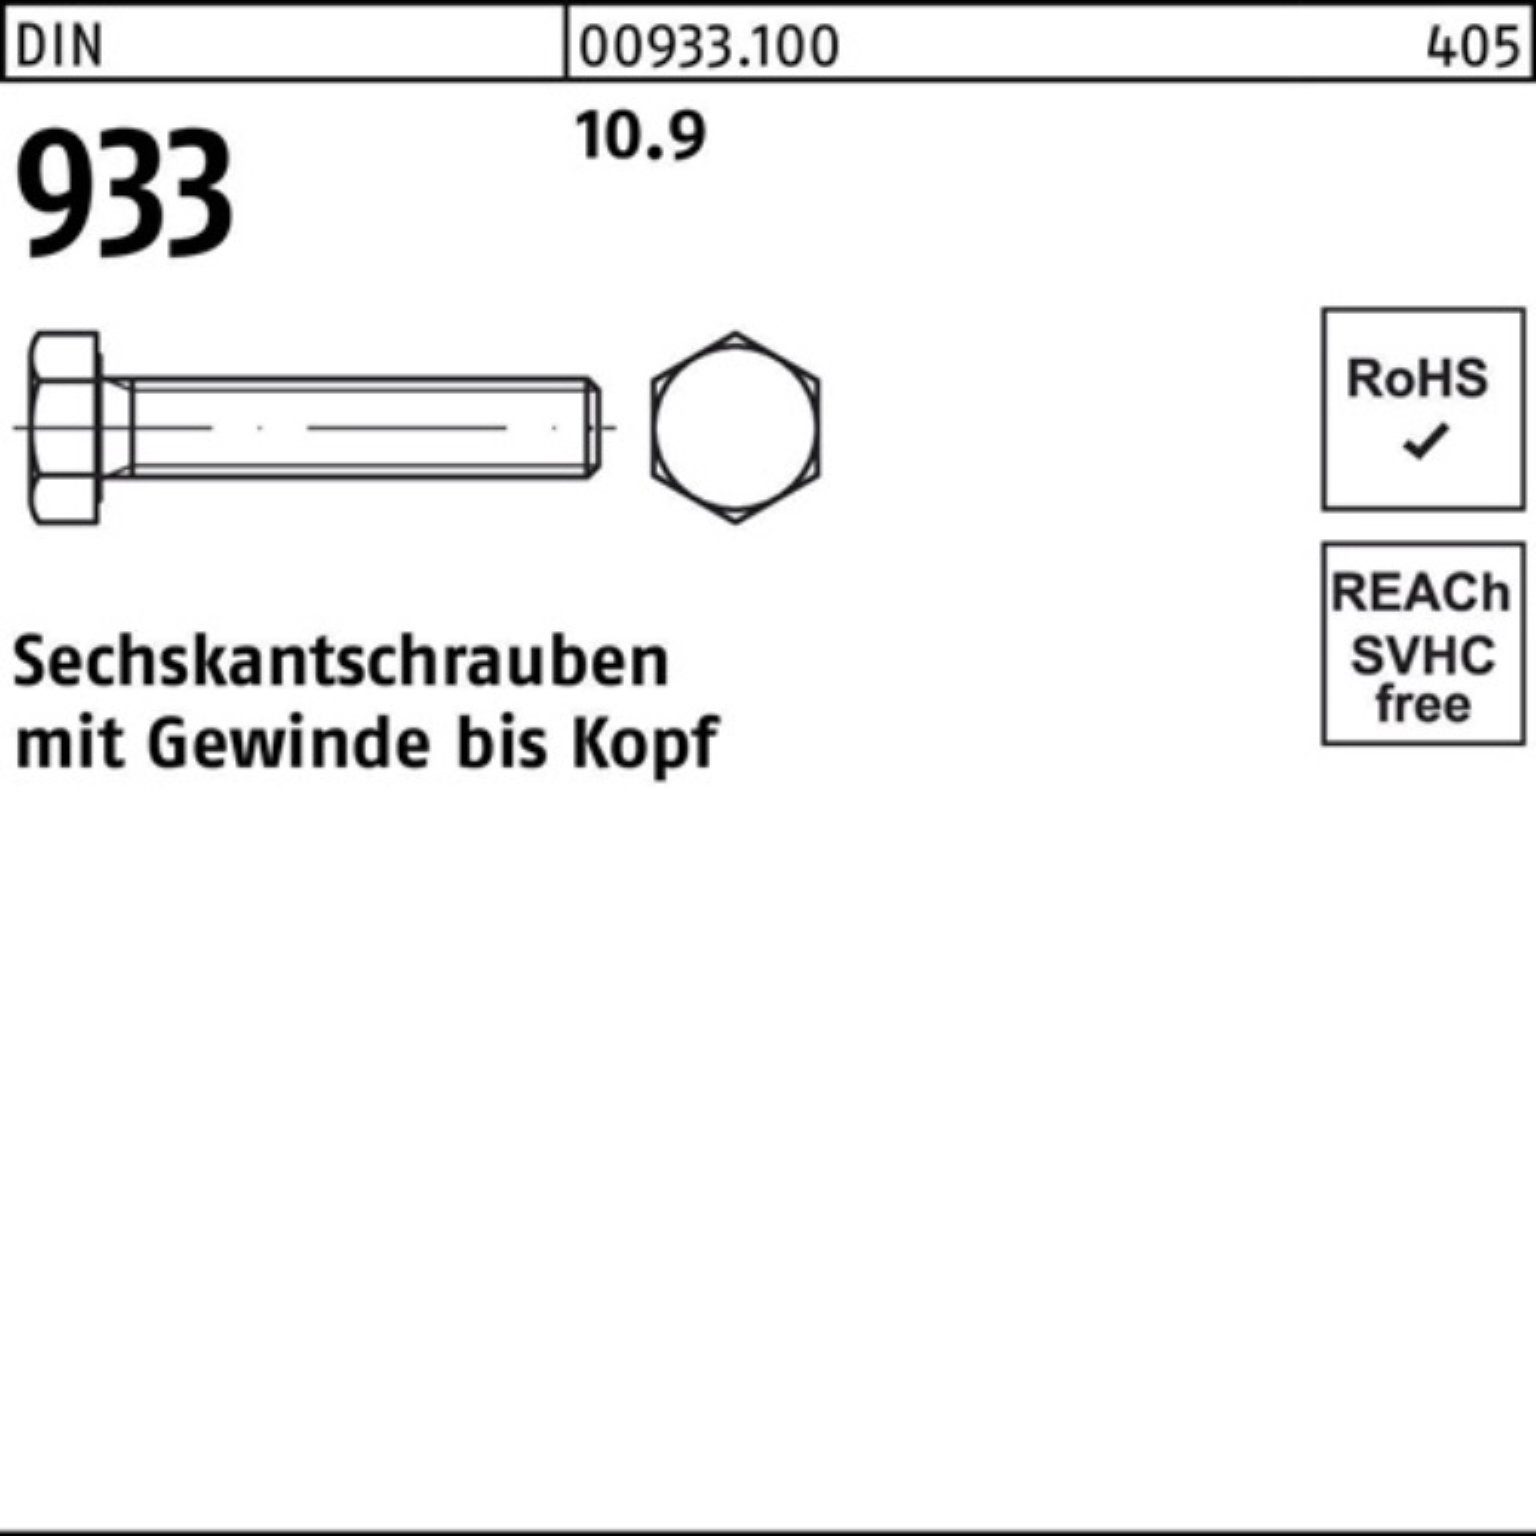 DIN 933 Sechskantschraube VG 933 DIN 10.9 Pack 280 Reyher 100er 1 Stück Sechskantschraube M24x